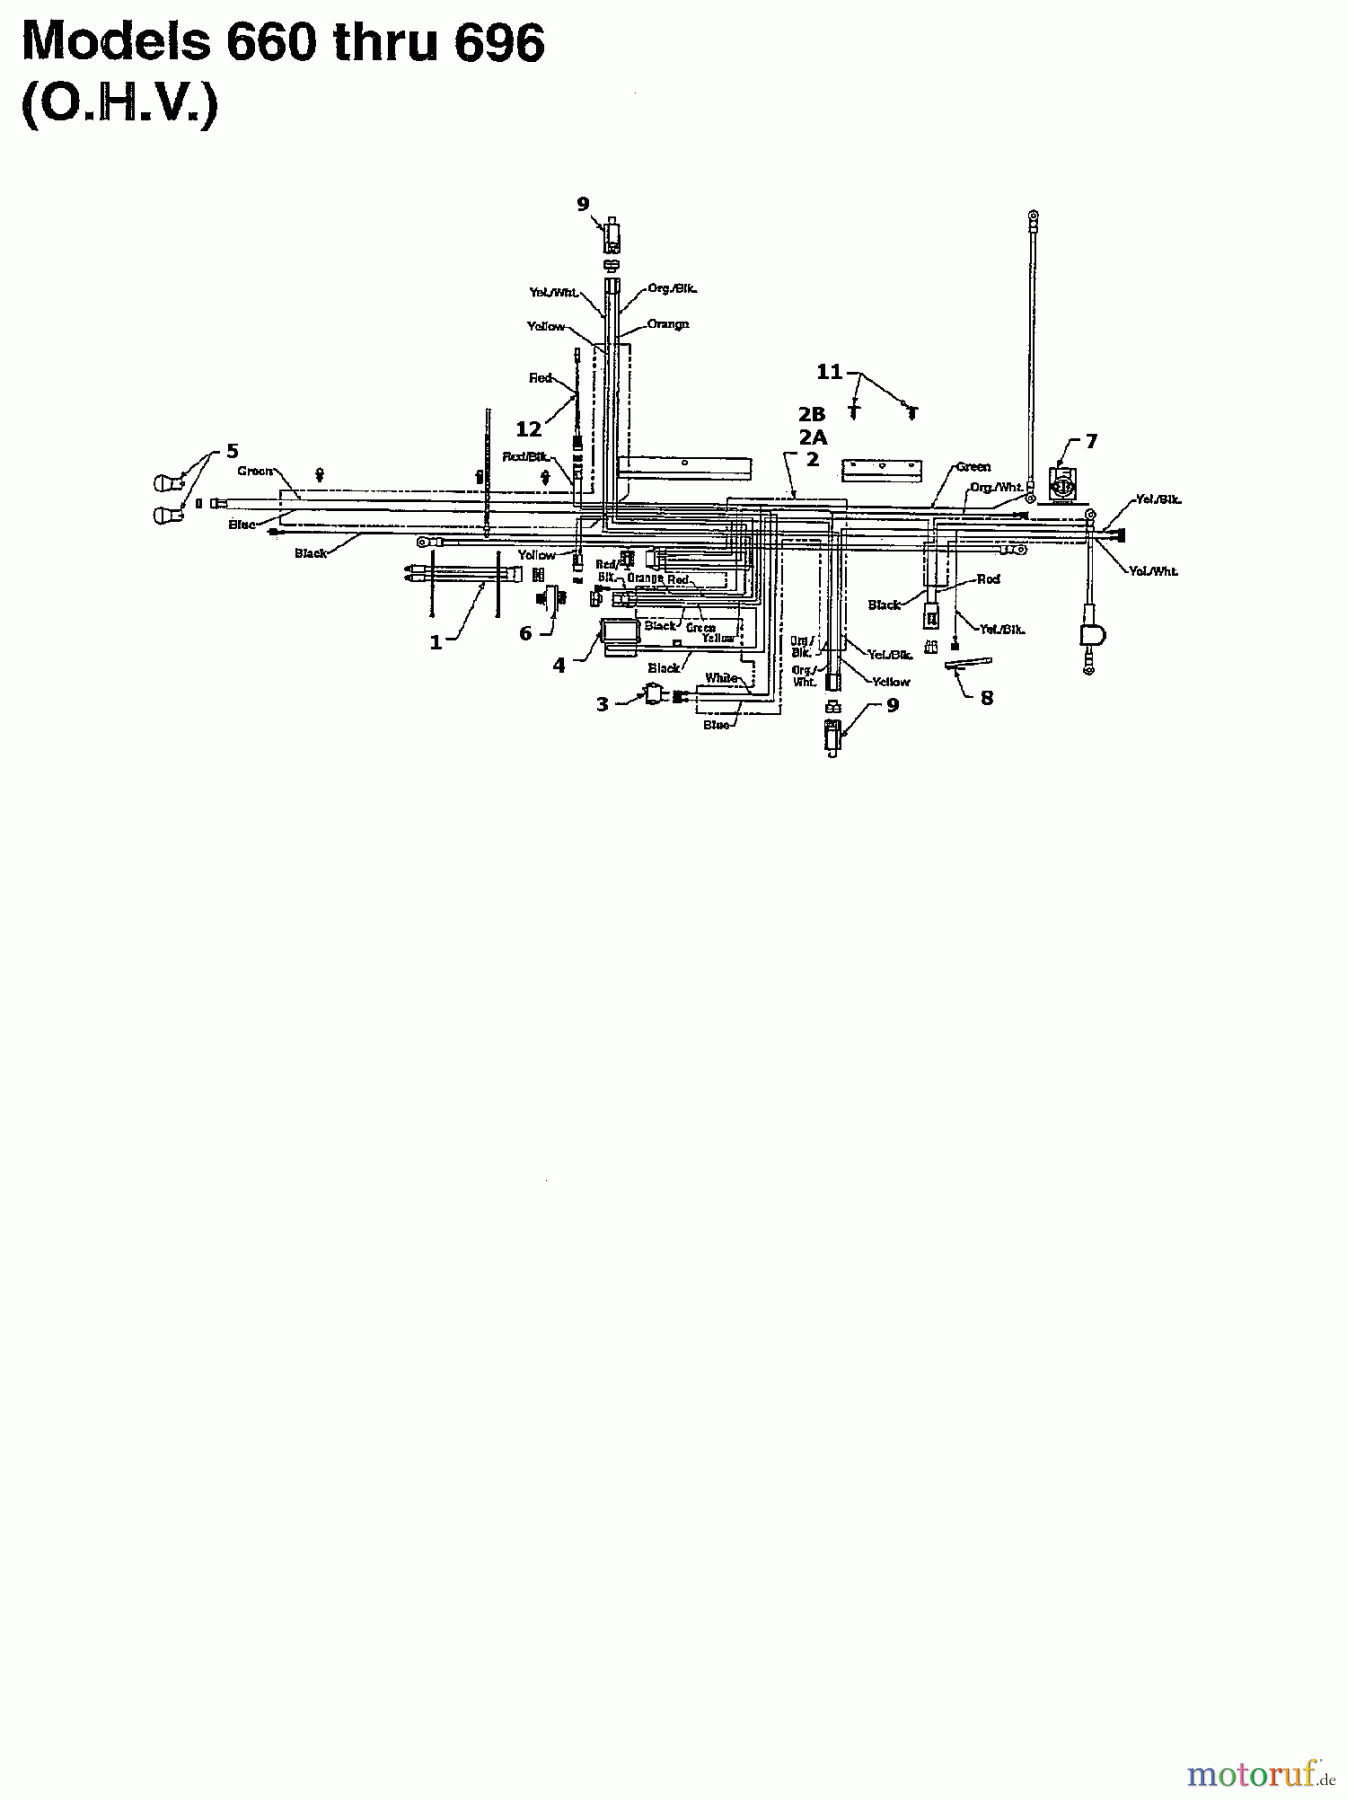  White Rasentraktoren LT 145 136M676F679  (1996) Schaltplan für O.H.V.